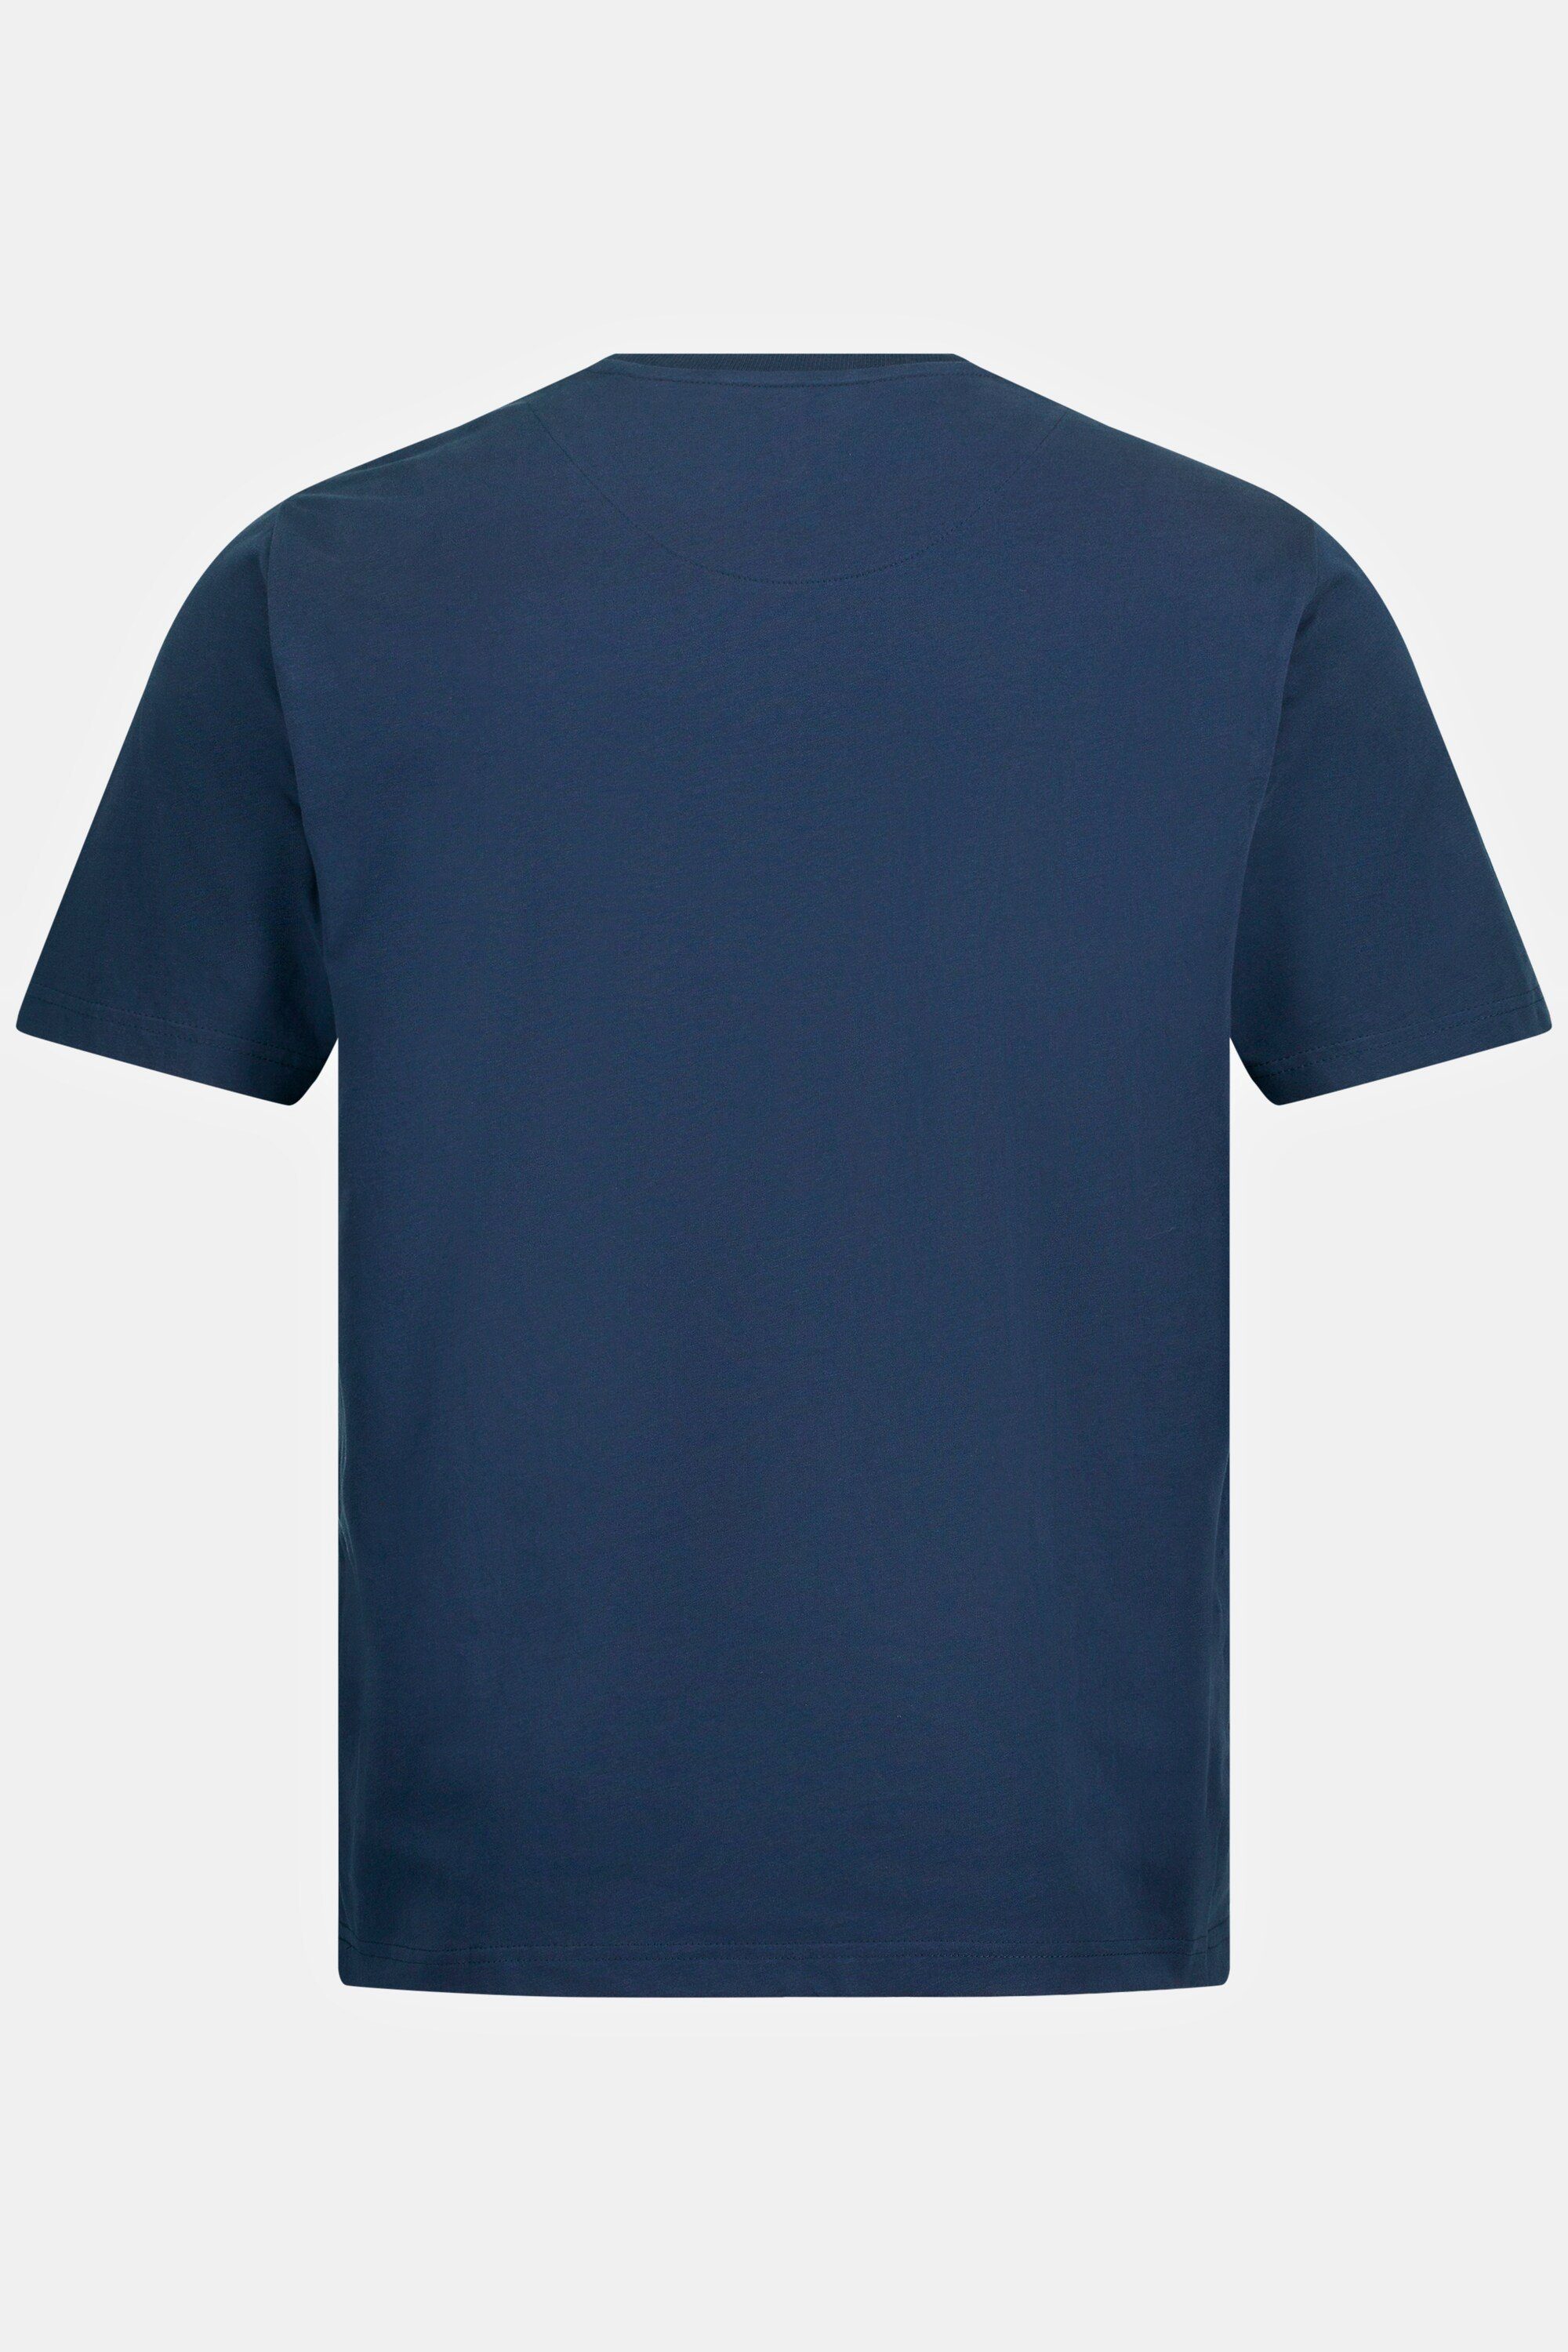 JP1880 T-Shirt T-Shirt Halbarm Badges Rundhals